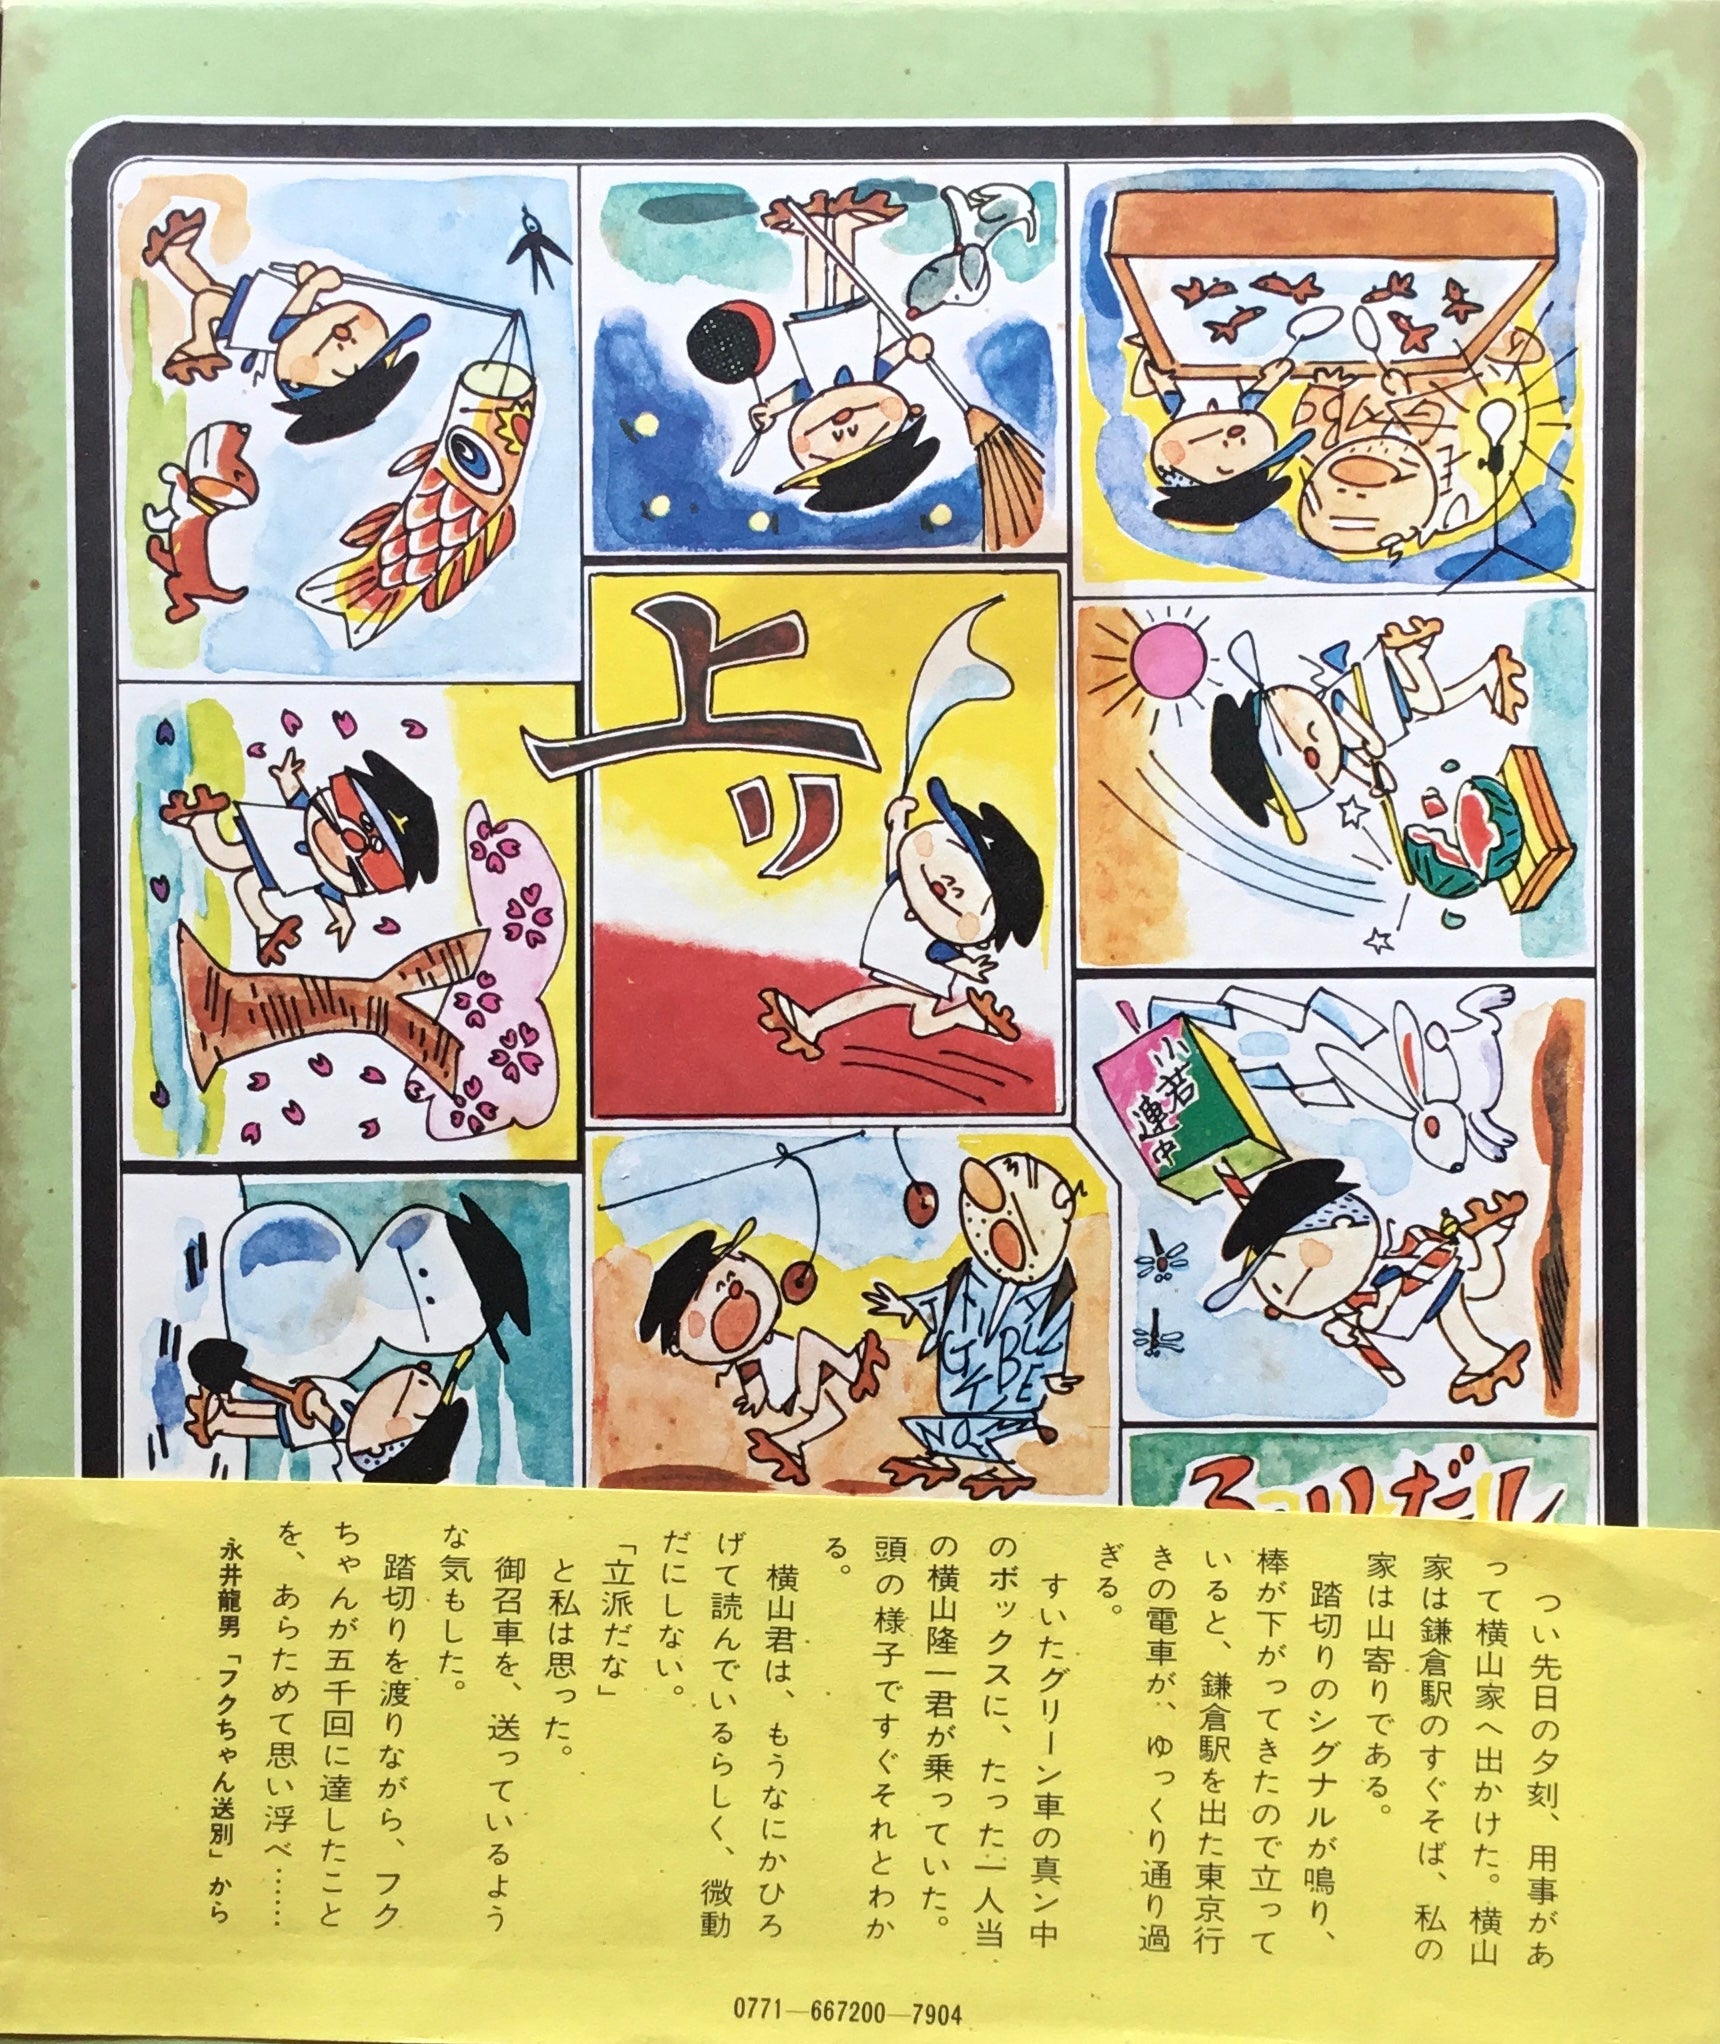 枚数限定! 「フクちゃん」全16巻 横山隆一 奇想天外社 - 漫画